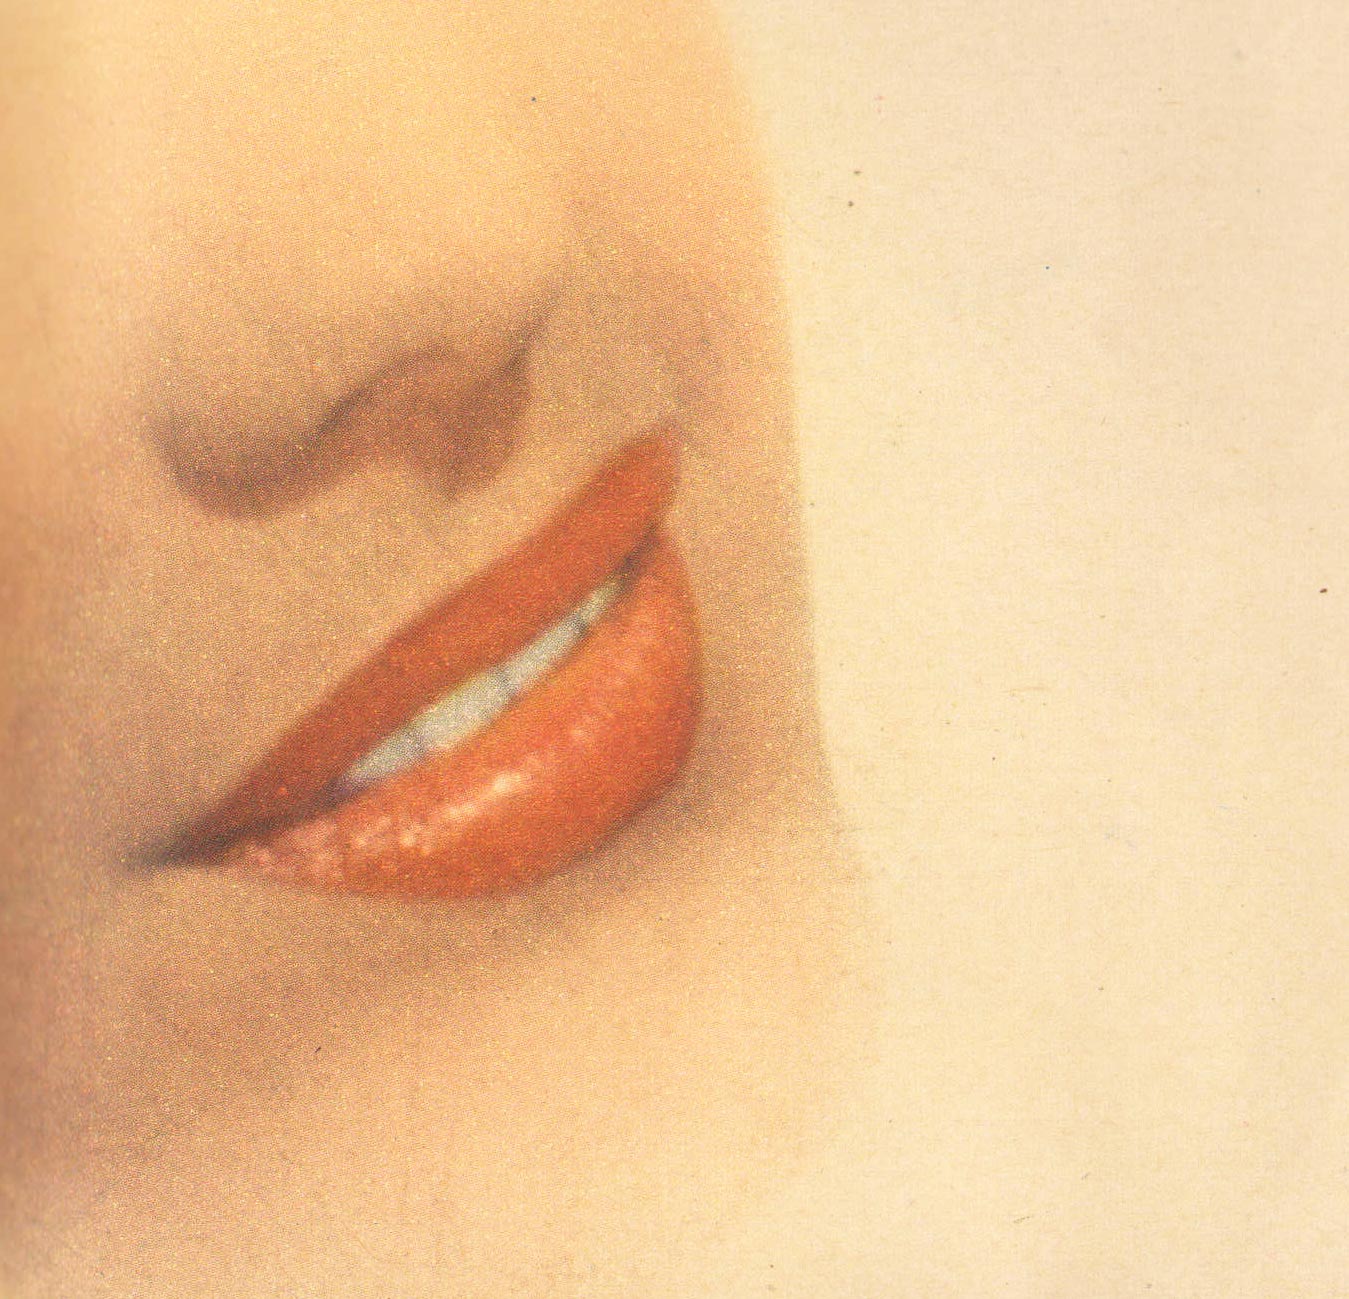 1950s makeup tips - lipstick